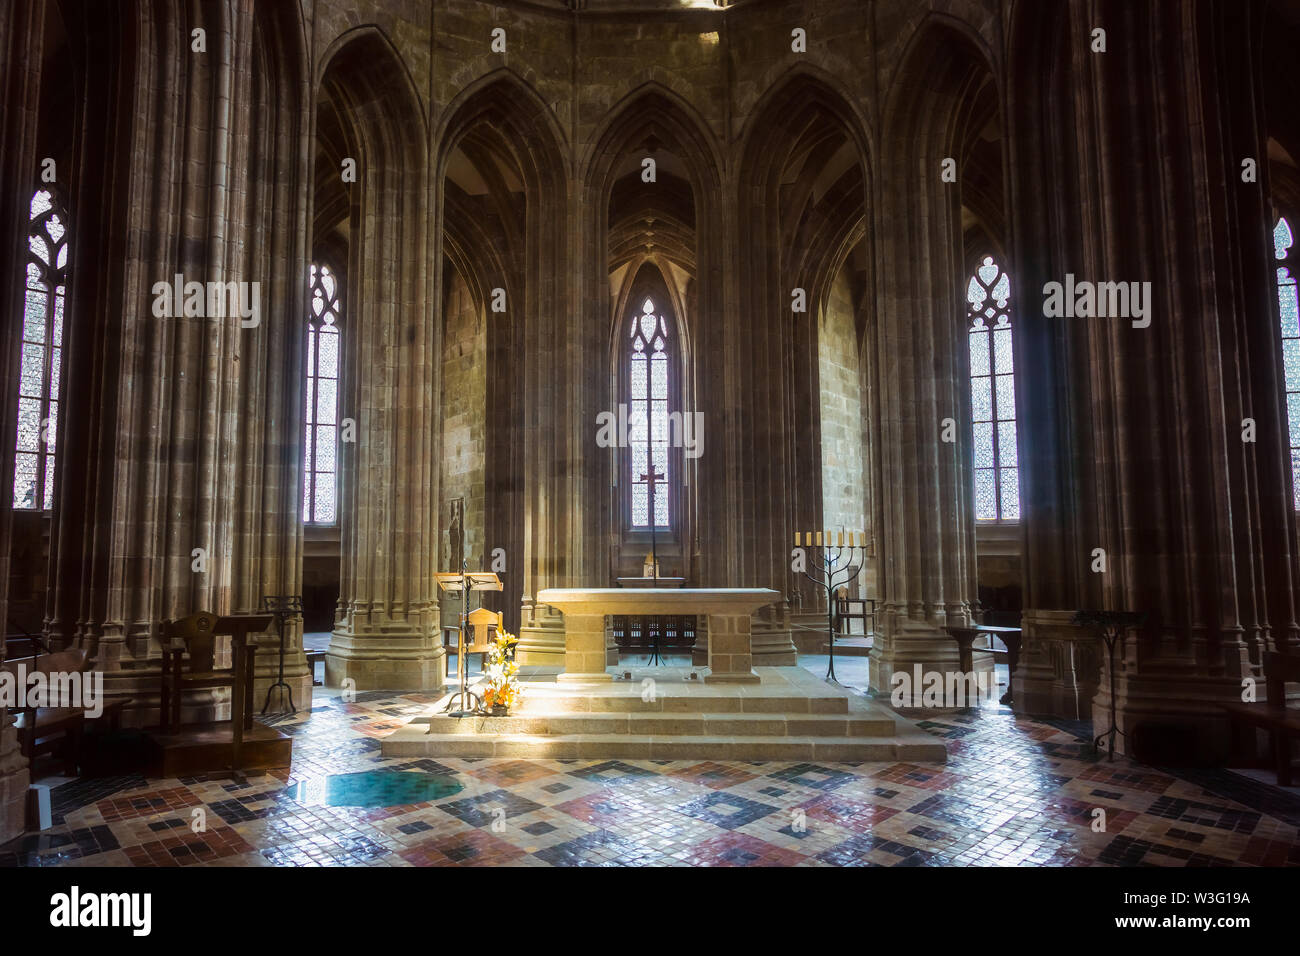 L'intérieur de l'abbaye du Mont St Michel. XV XVIÈME siècle choeur gothique de l'église abbatiale. Normandie monument, France. Banque D'Images